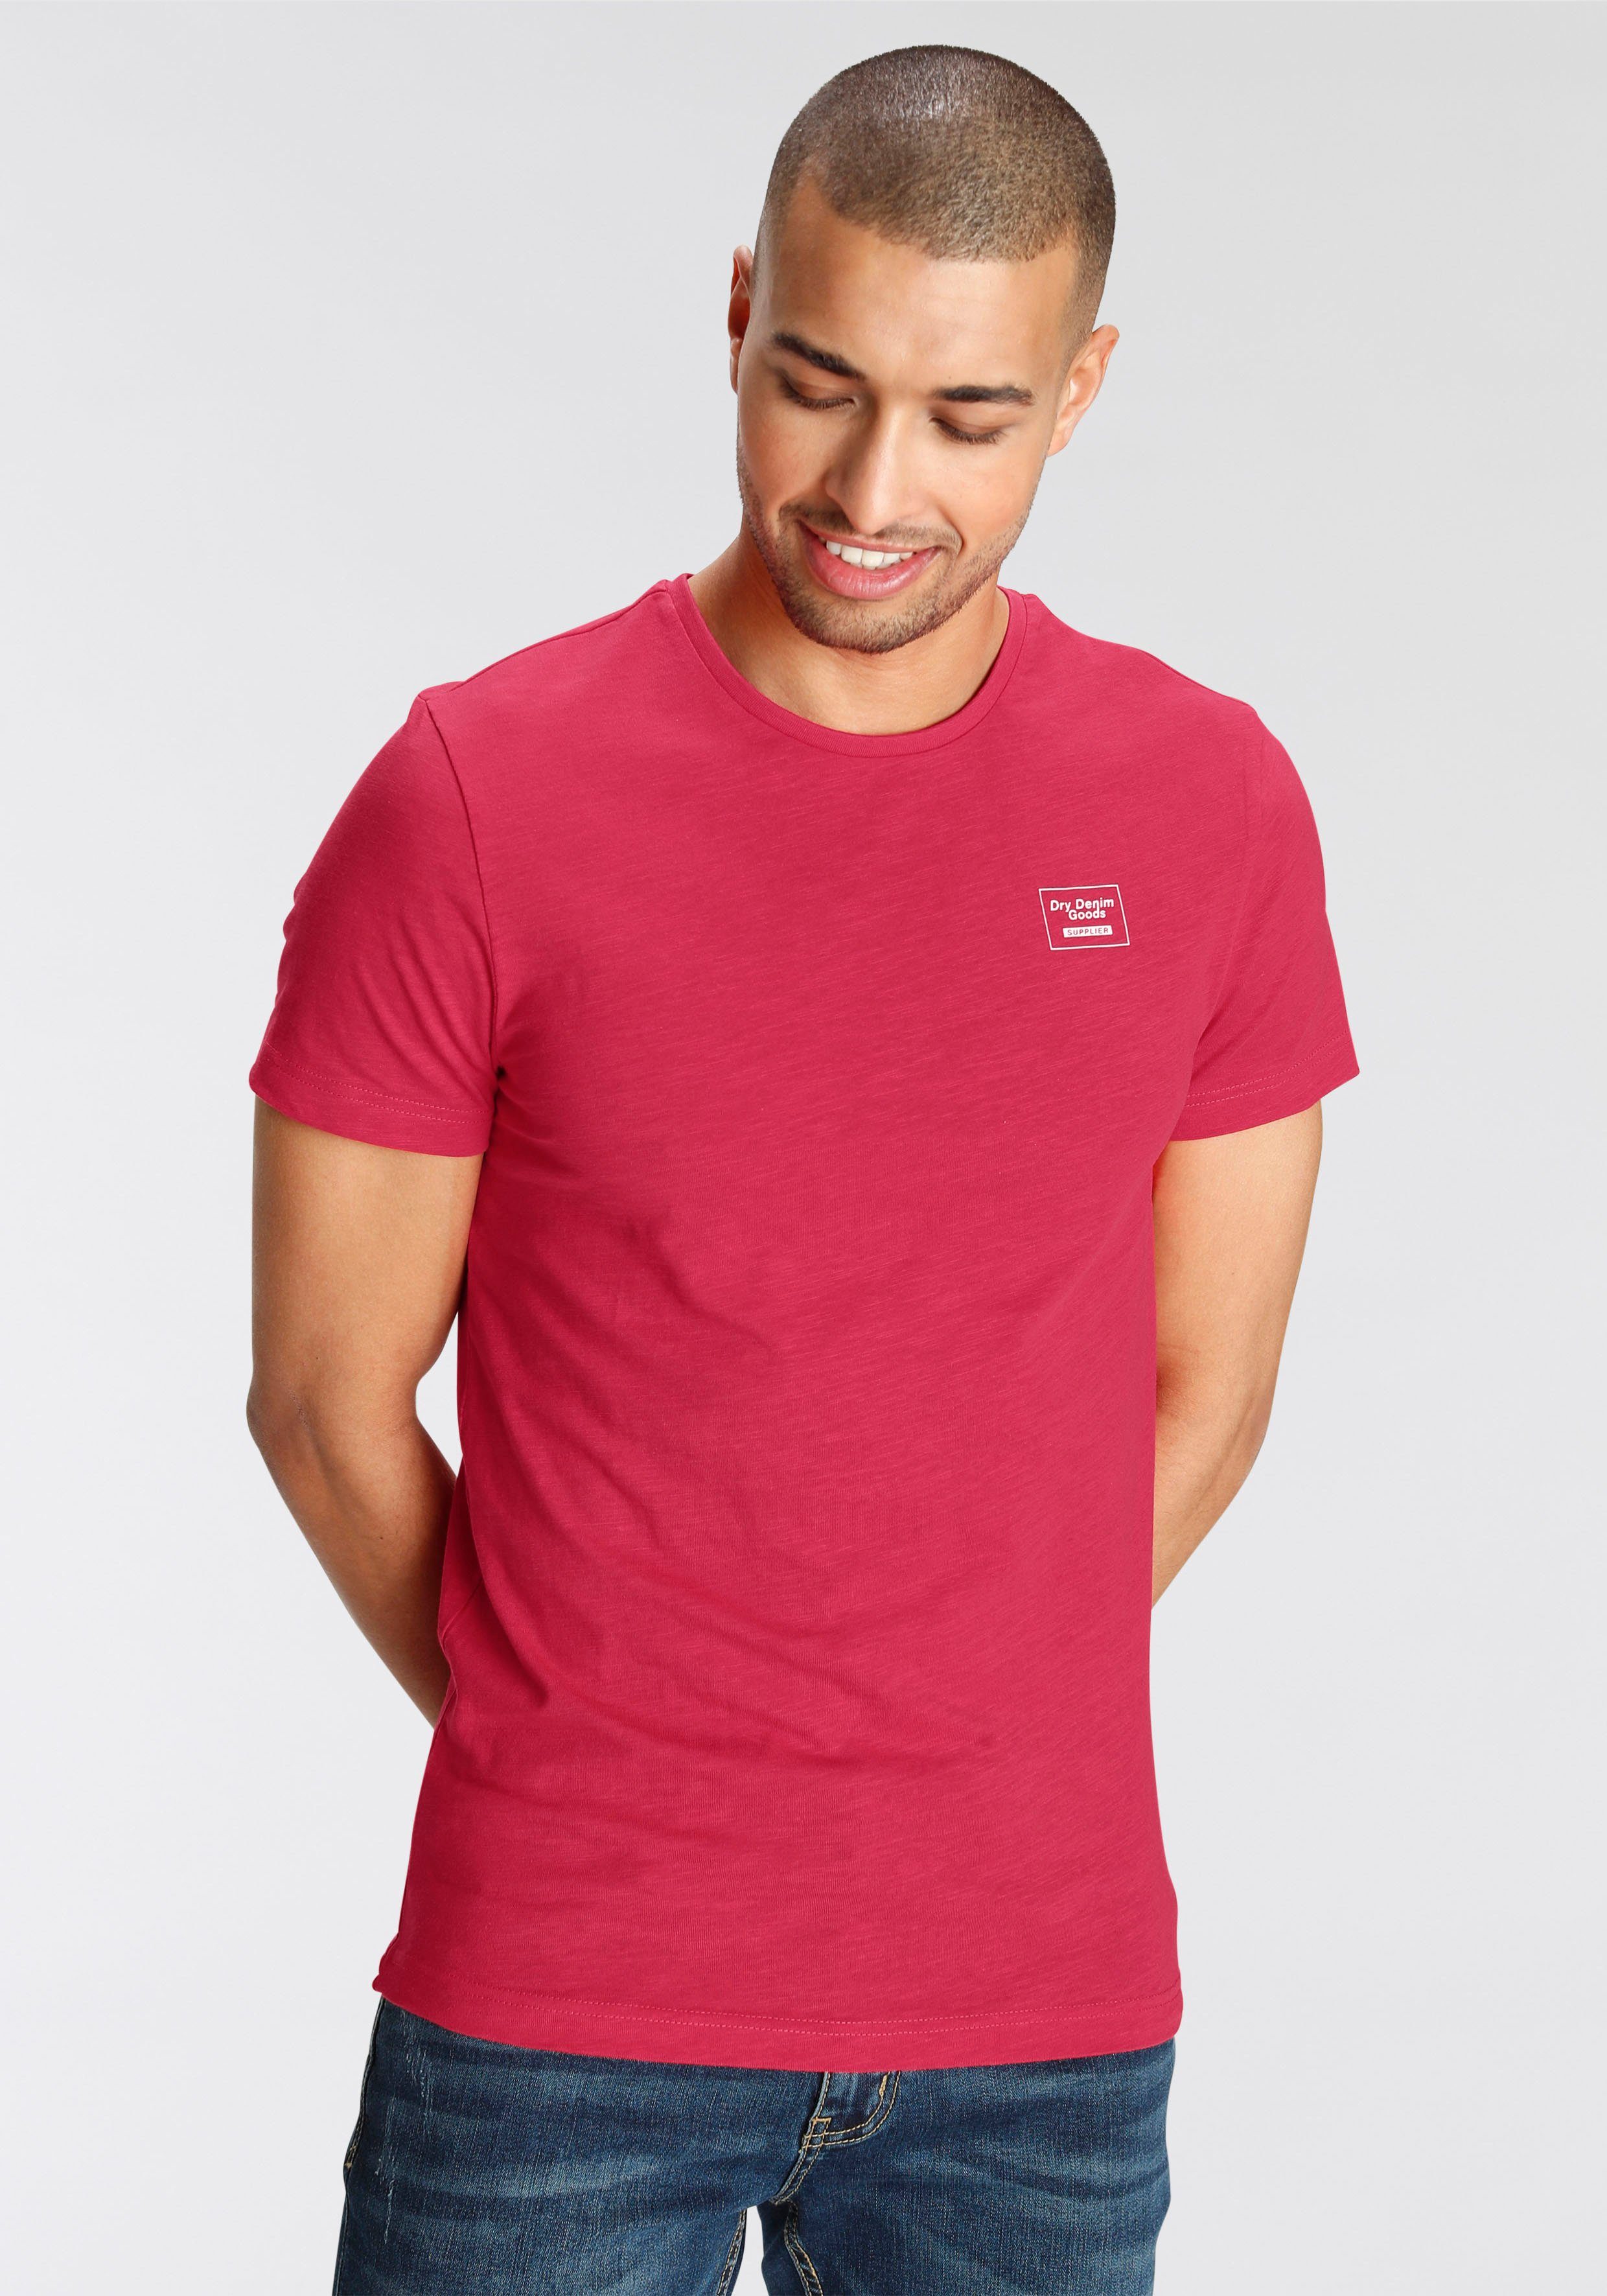 AJC T-Shirt aus hochwertigem Slub rot | T-Shirts